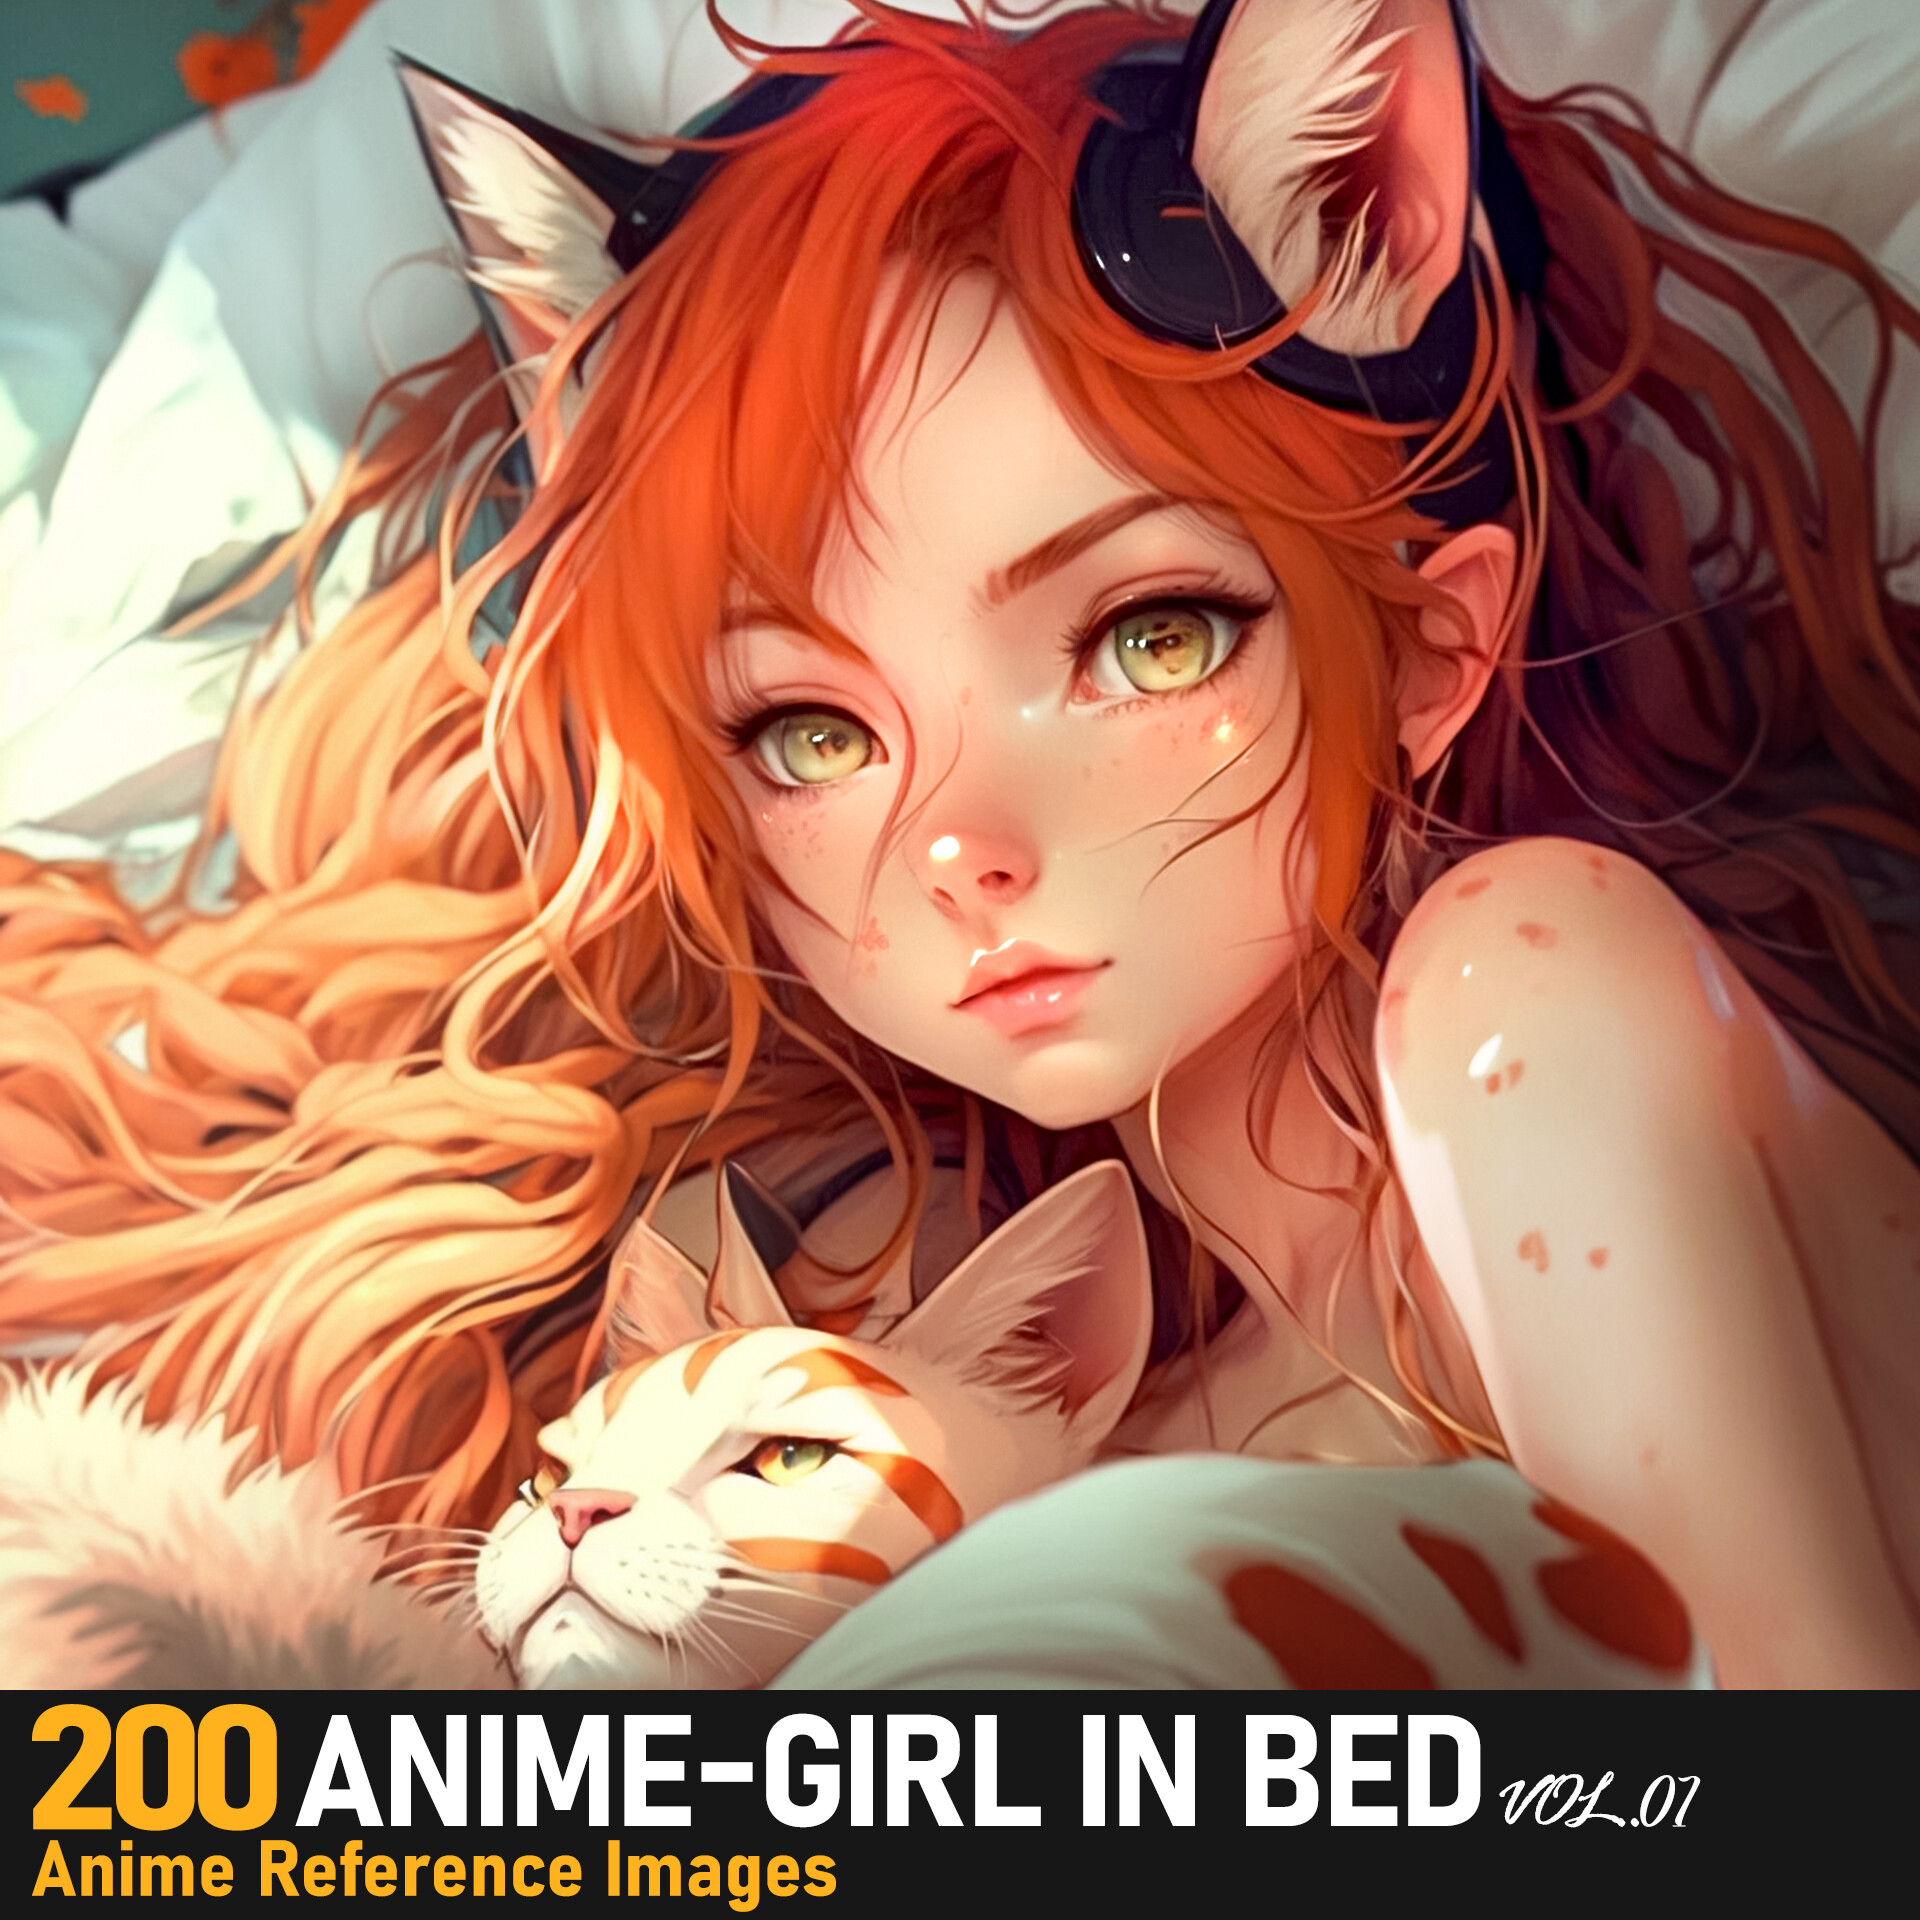 ArtStation - BEAUTY GIRL IN BED / FAN ART ANIME